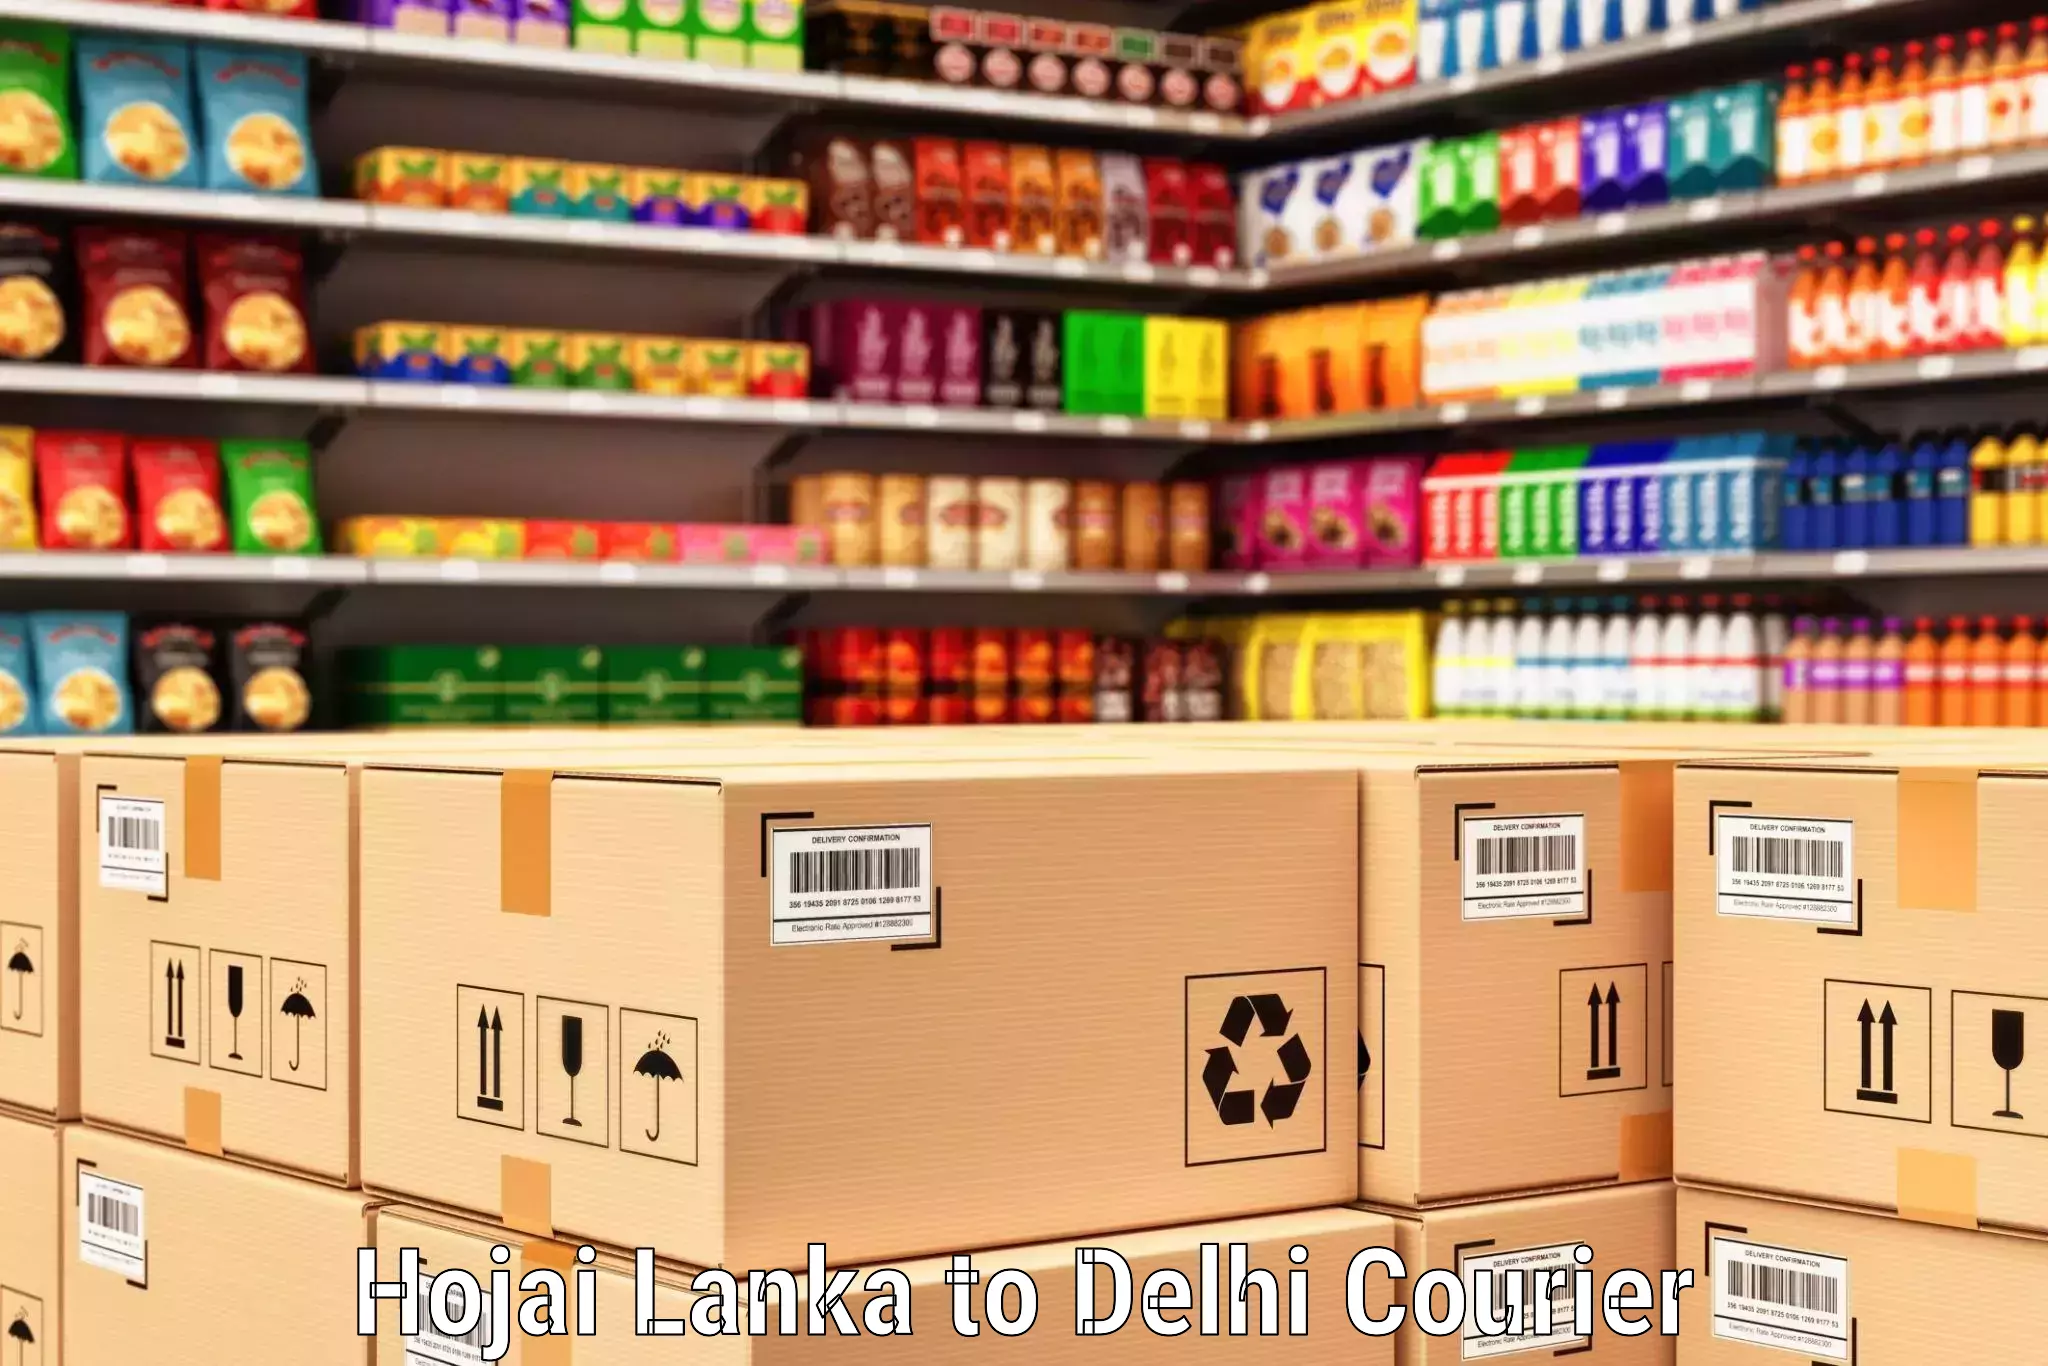 Express delivery capabilities Hojai Lanka to Jamia Millia Islamia New Delhi